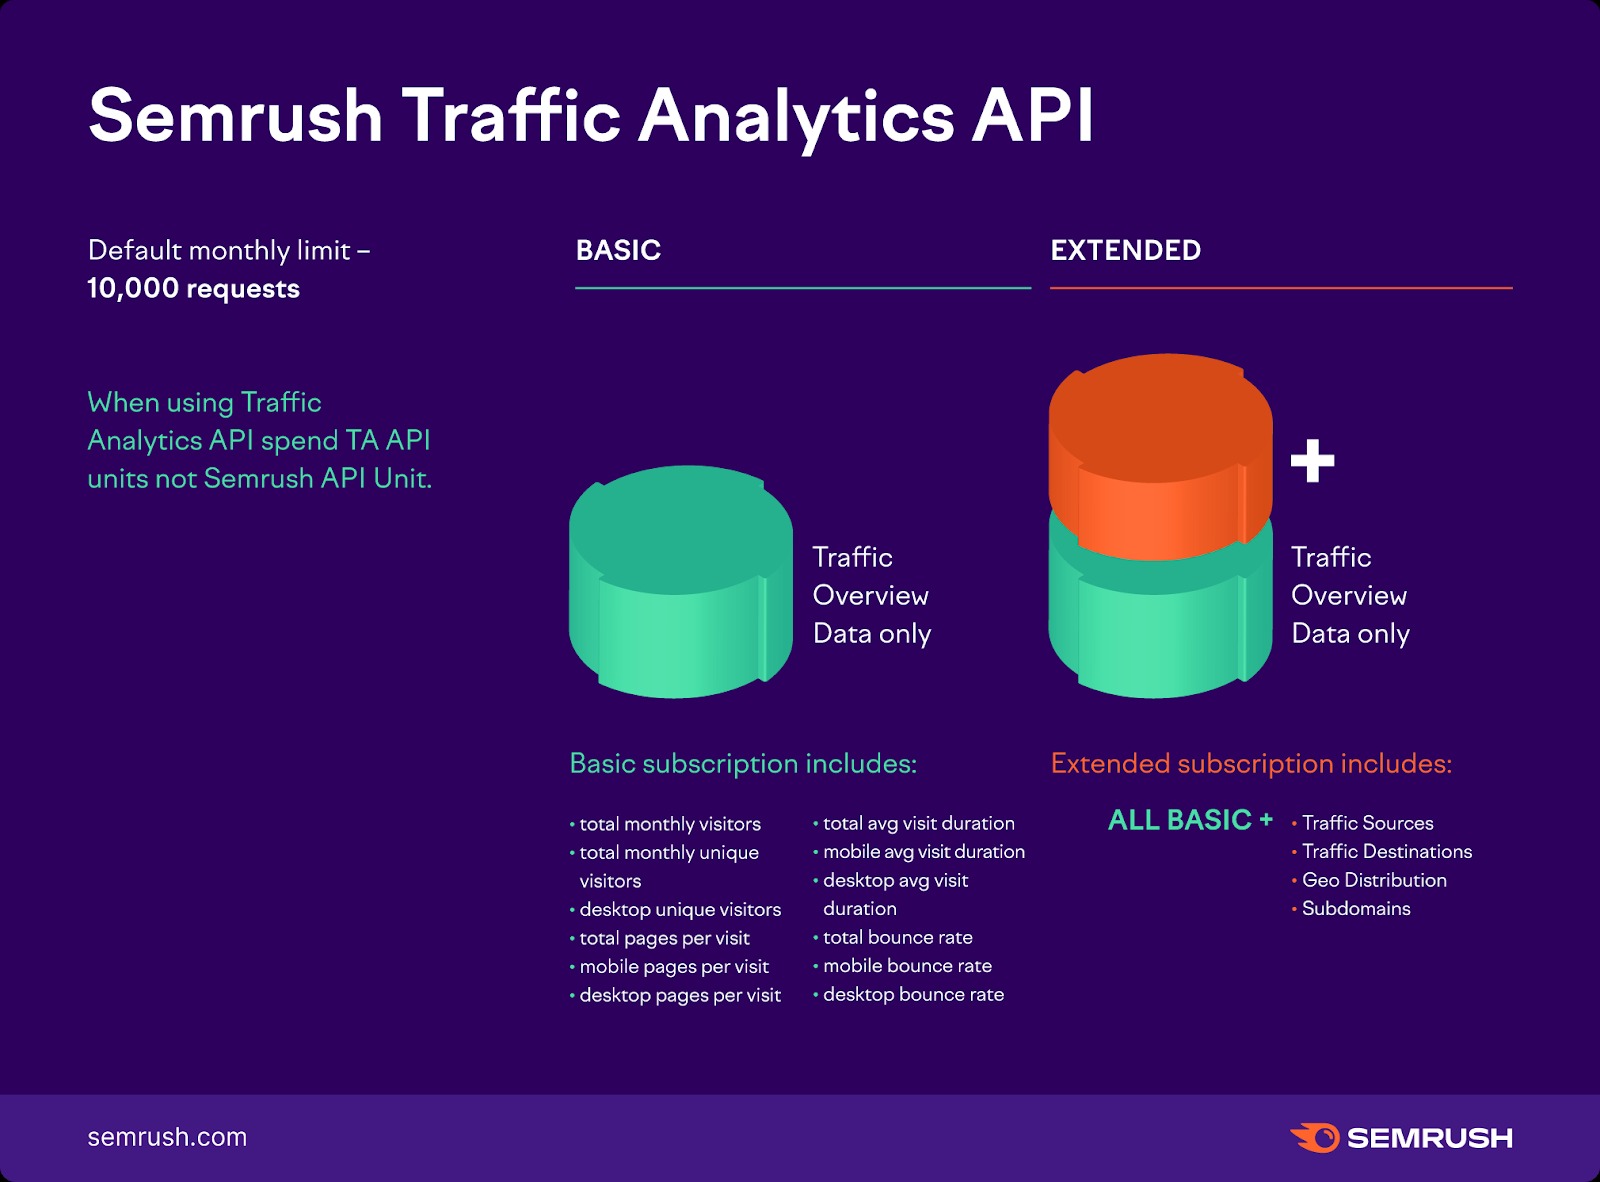 Una lista de los límites de la API Traffic Analytics de Semrush, incluida en los planes de suscripción básico y extendido. 